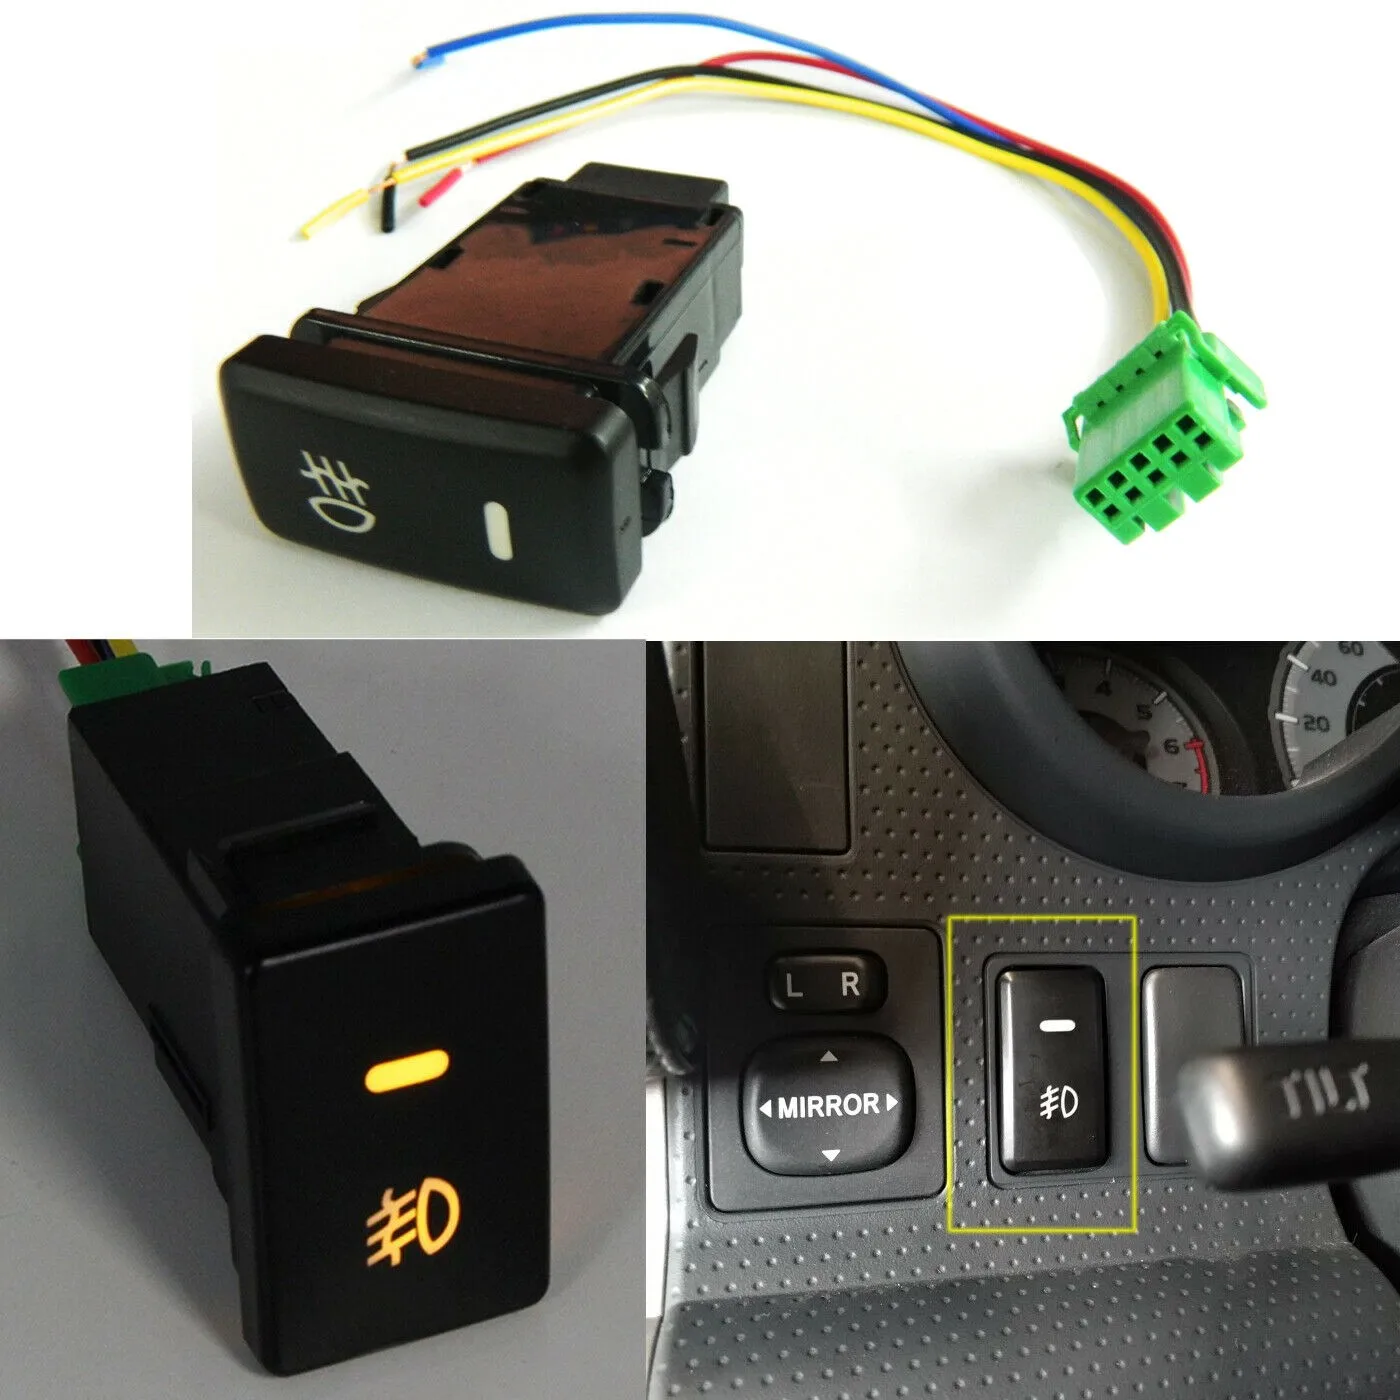 1pc For Toyota FJ Cruiser 2007-2014 Amber Fog Light Switch Button To Control LED Light Bars/ Daytime Running Lights/ Fog Lights